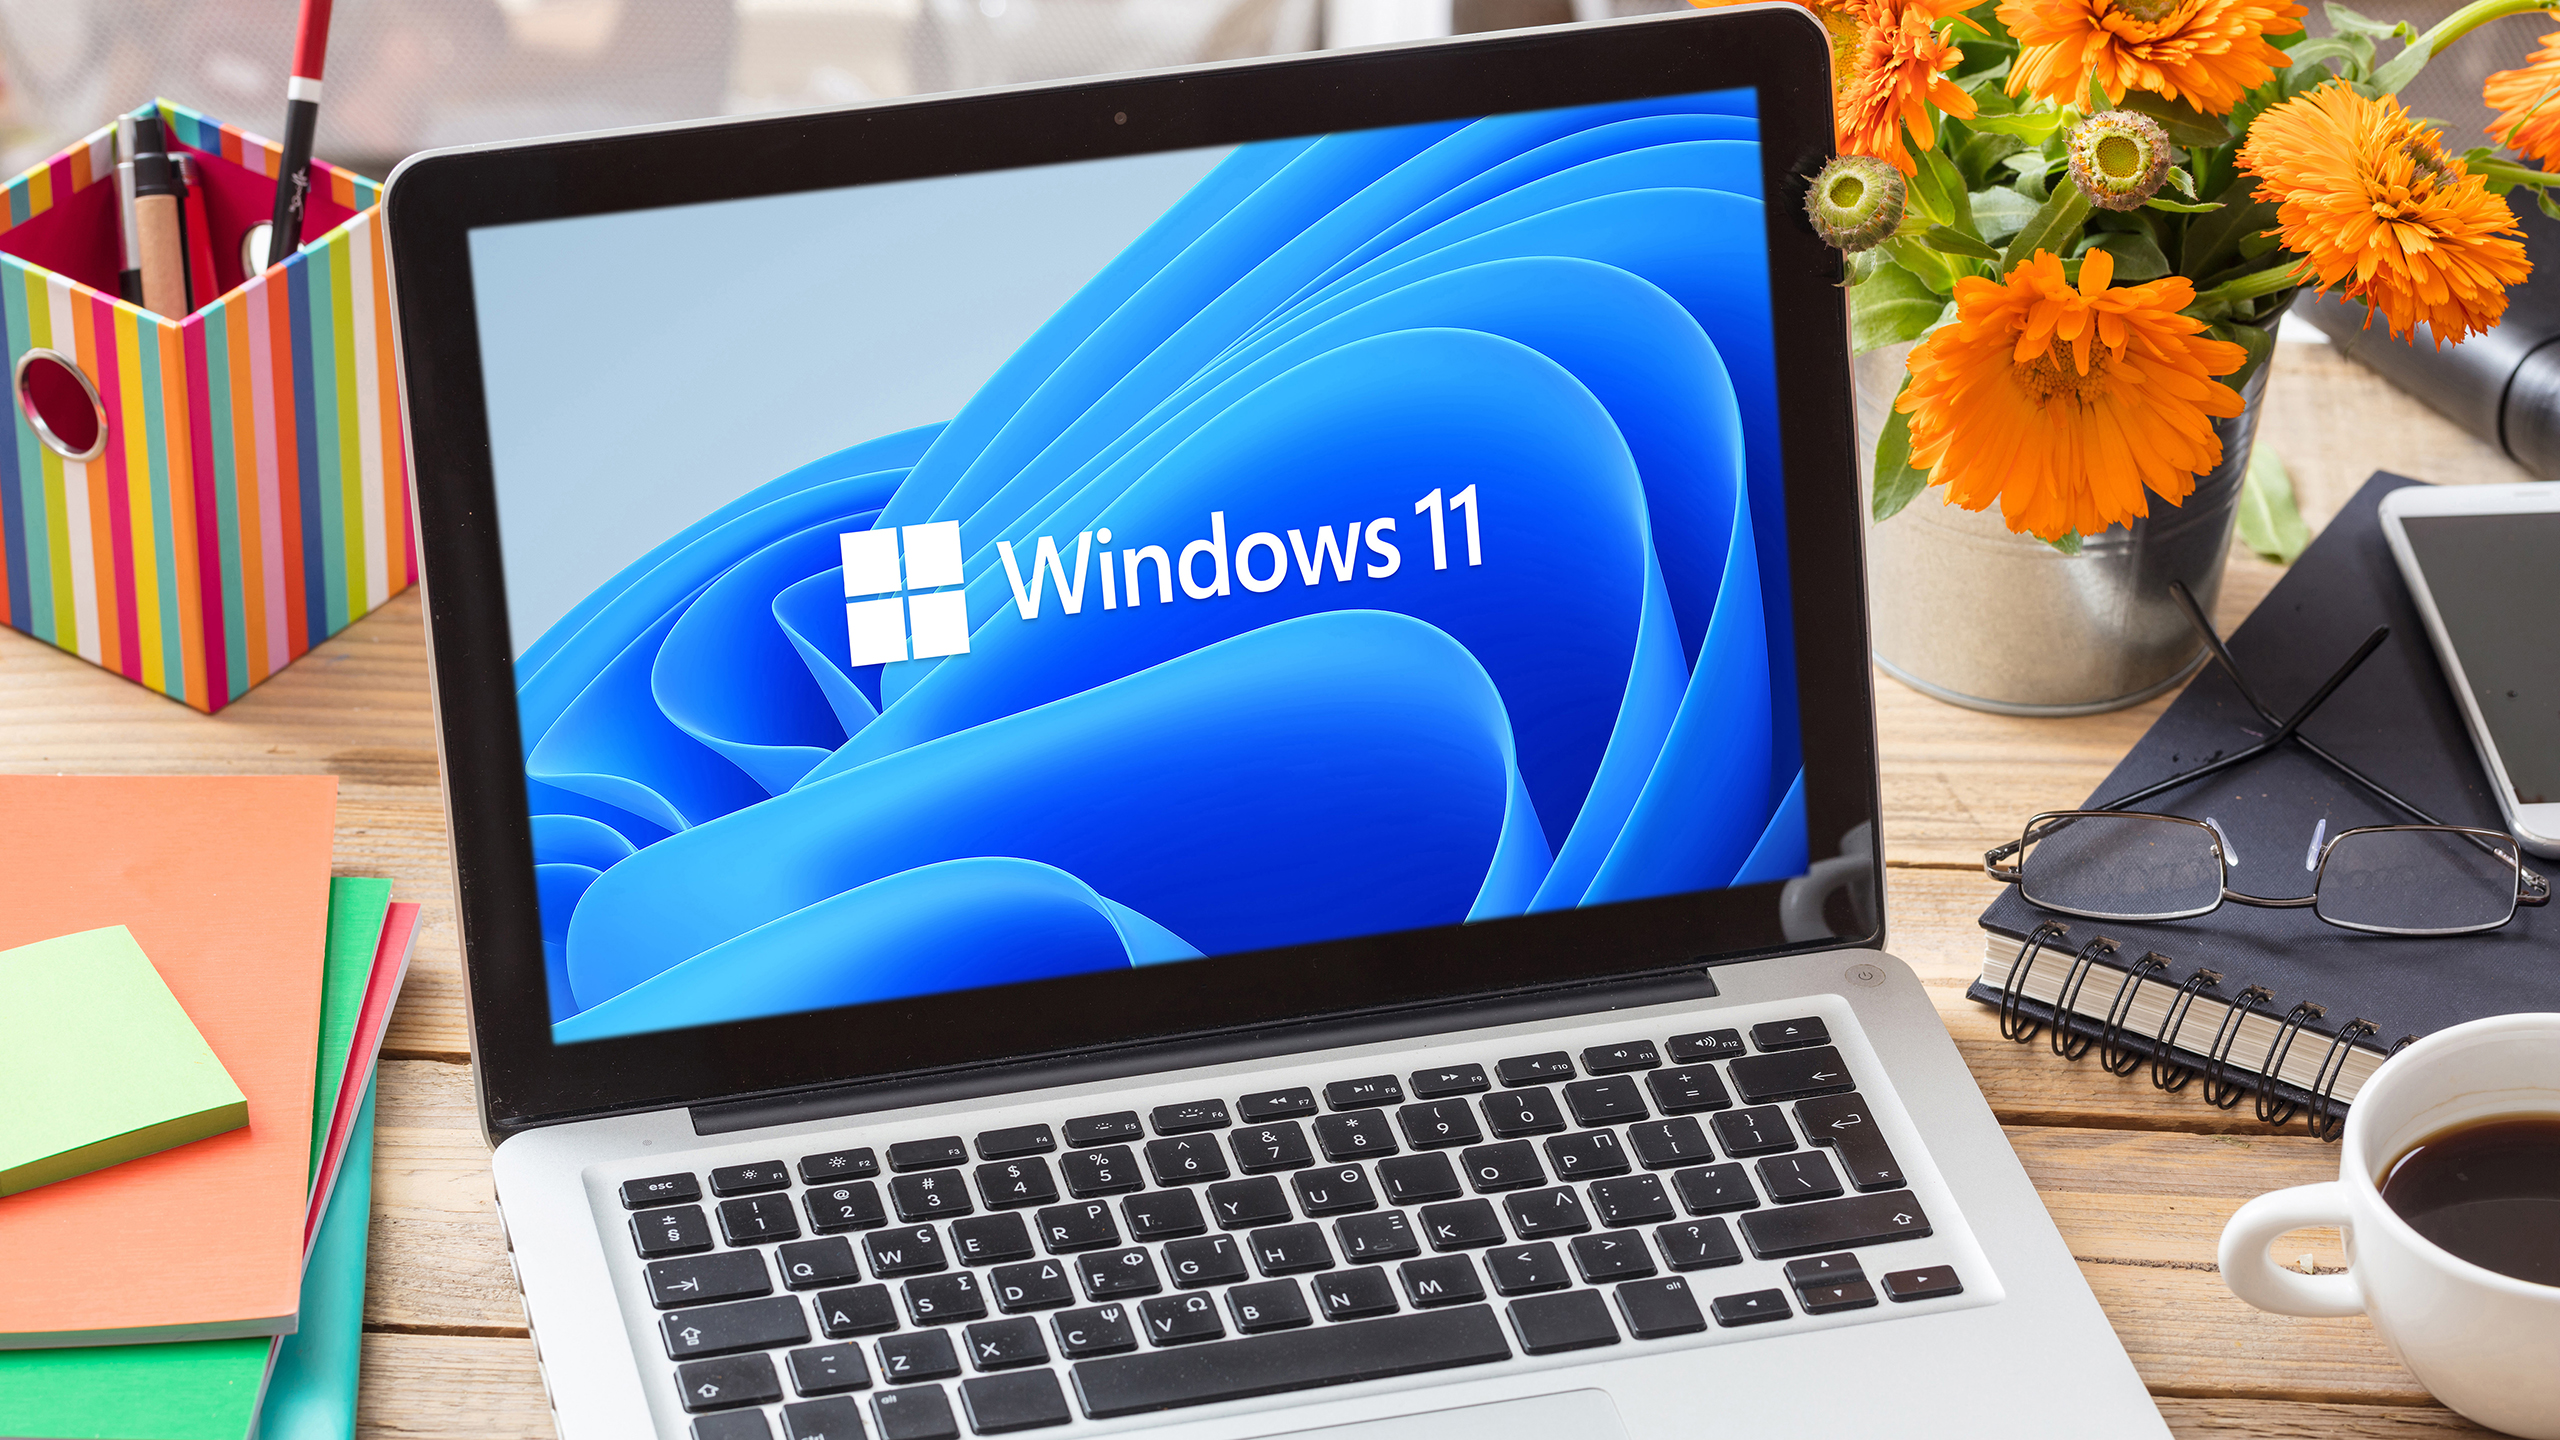 Dấu hiệu thương hiệu chính thức của Windows 11 trên màn hình máy tính xách tay, bàn văn phòng doanh nghiệp